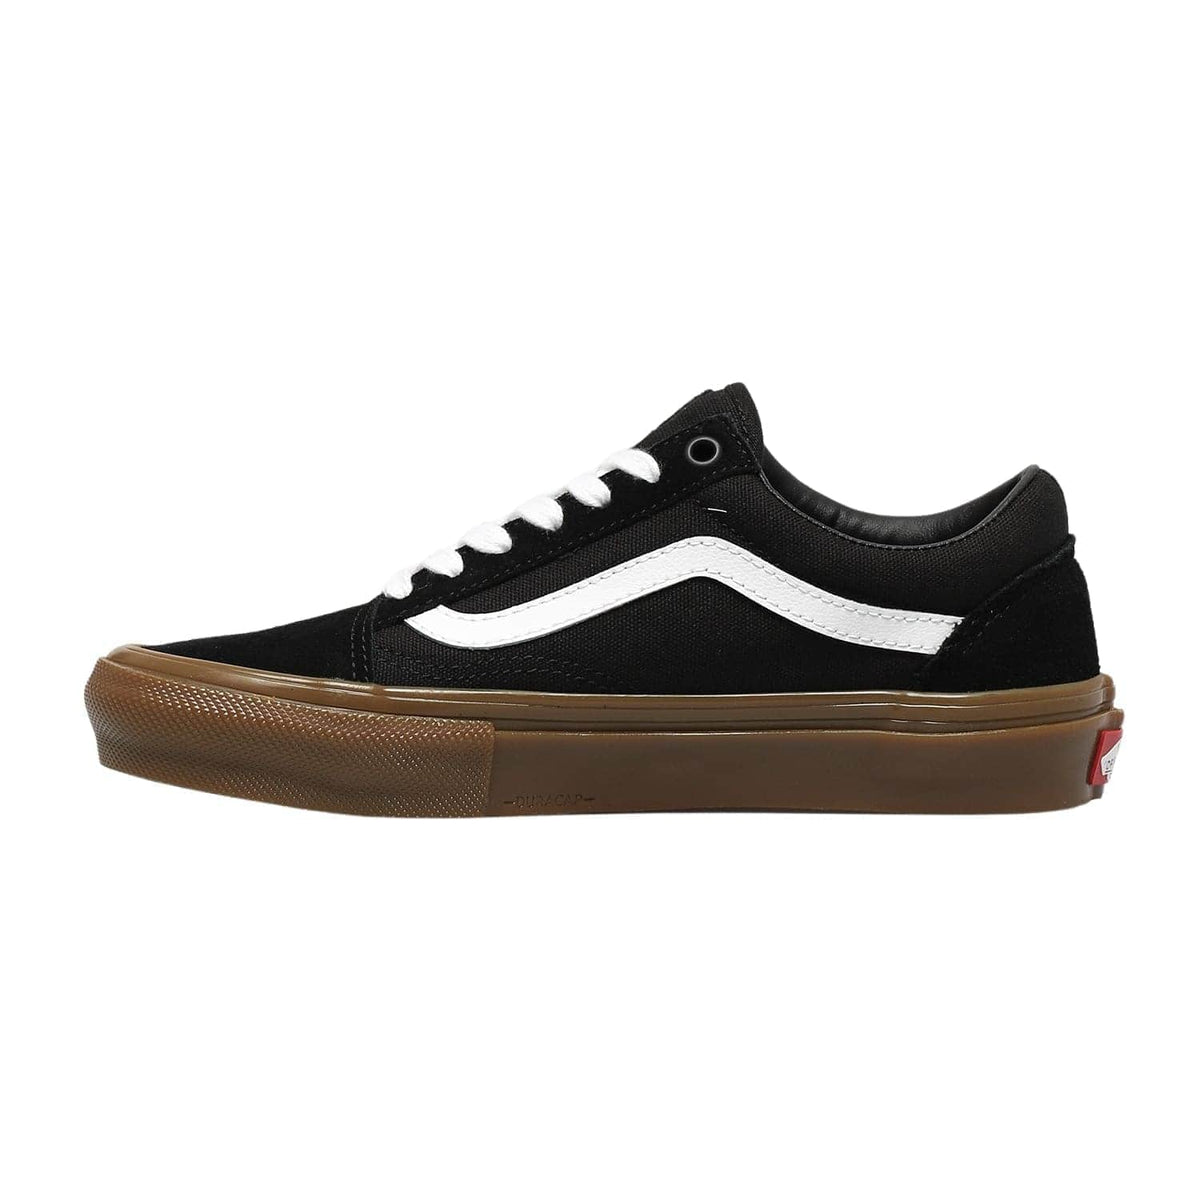 Vans Skate Old Skool Shoes - Black Gum - Mens Skate Shoes by Vans